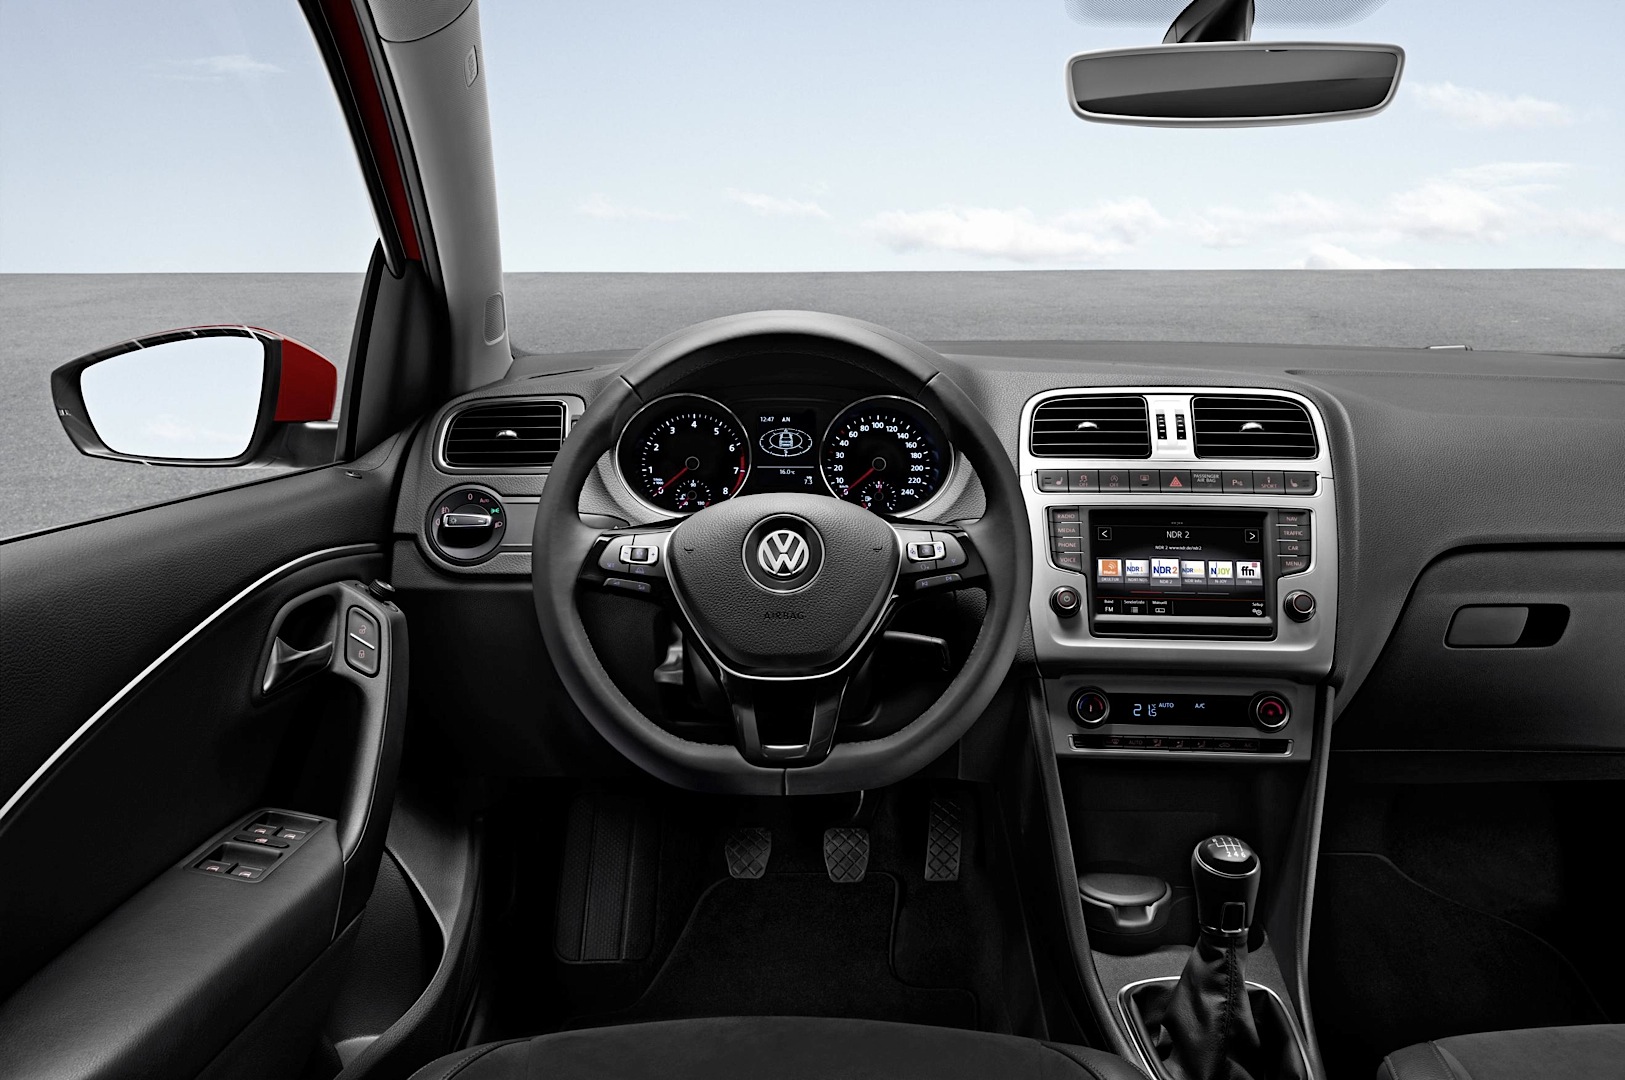 Volkswagen Polo 5 (6R) 1.2 70HP Advance specs, dimensions